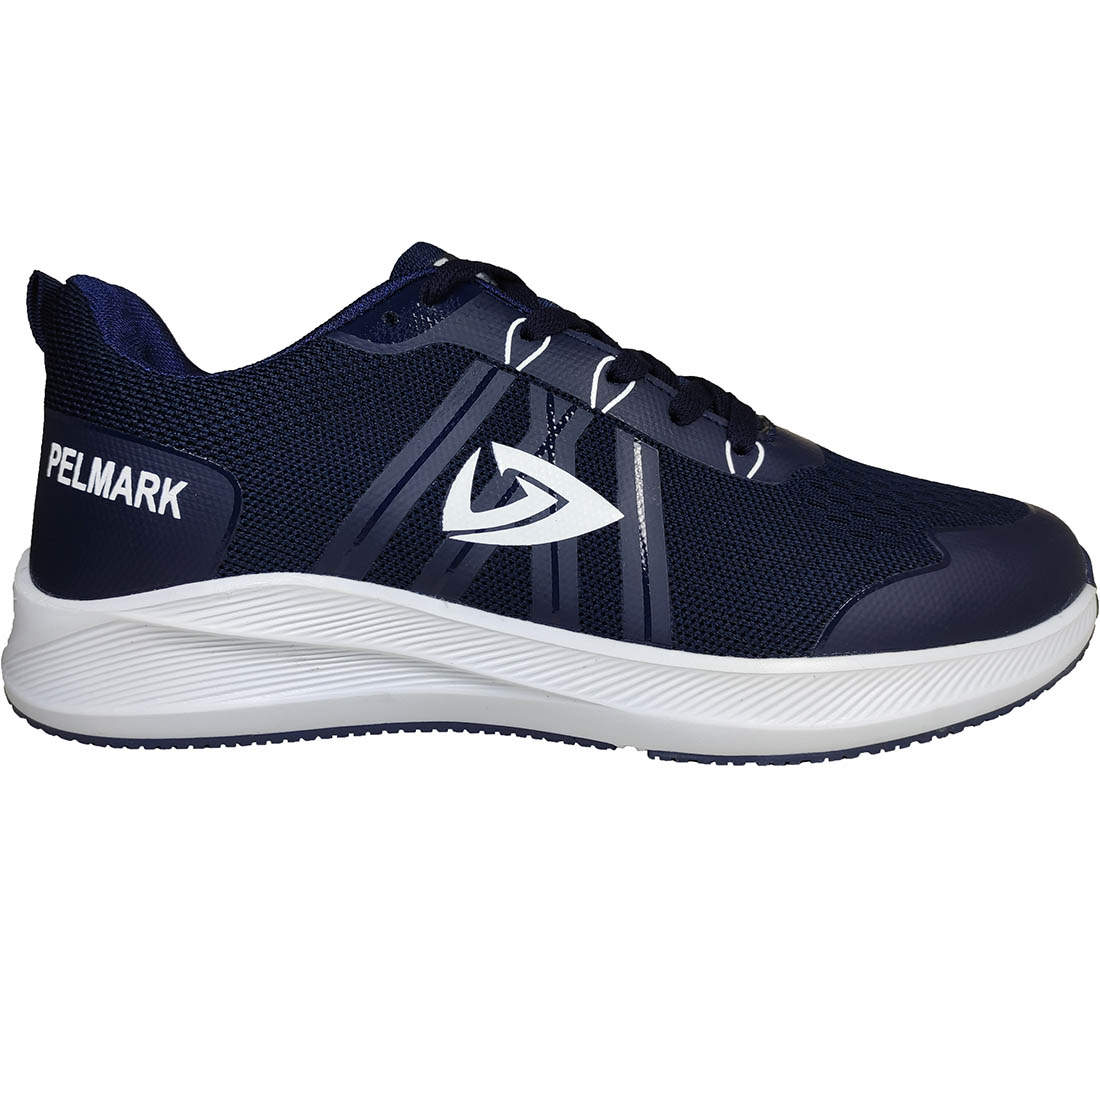 Mens Running Shoes Pelmark WW-163A Blue